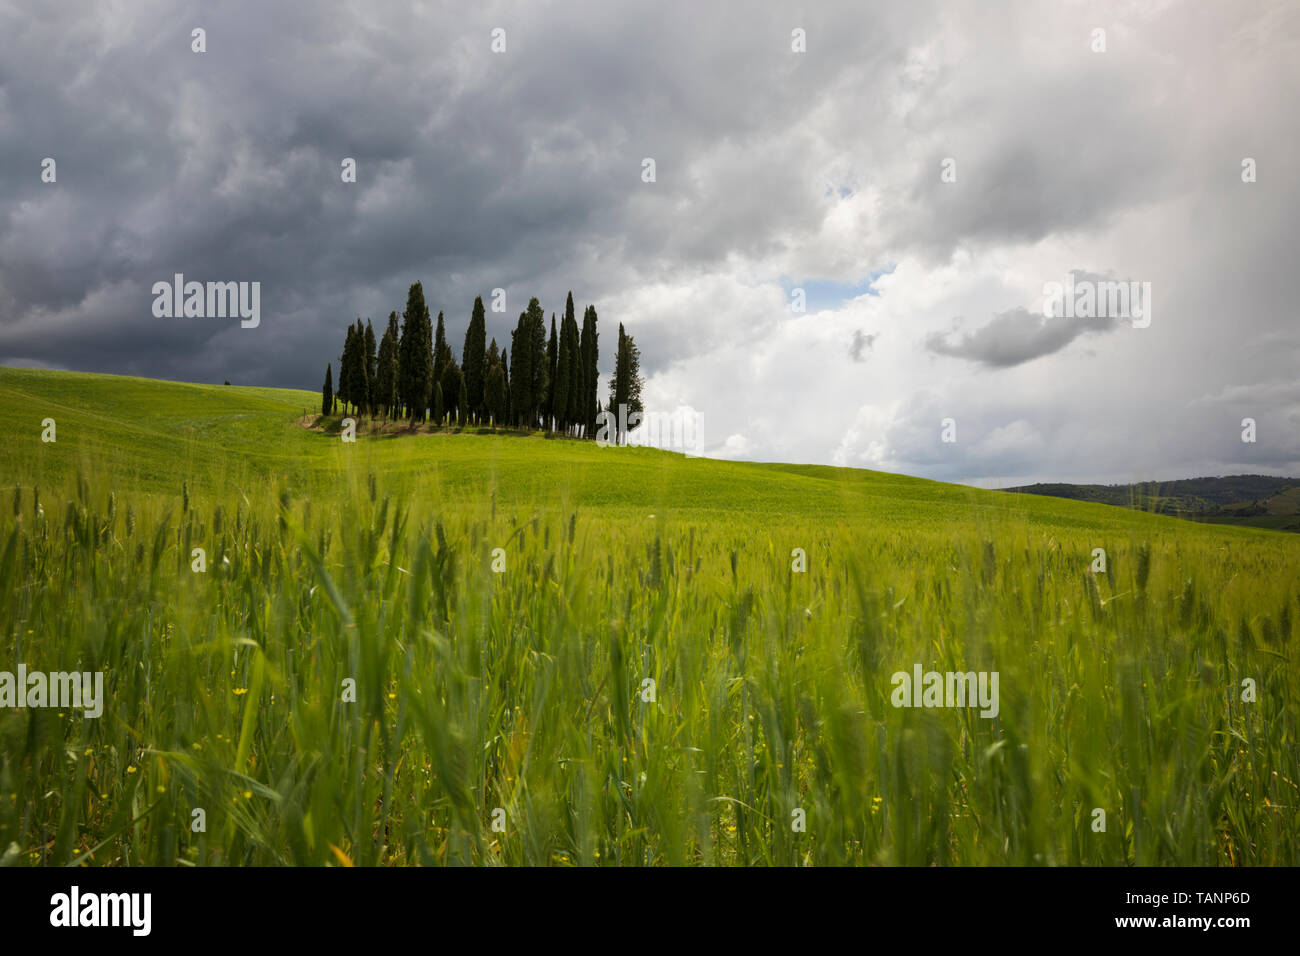 Intrico di cipressi nel campo di orzo sotto una tempesta cielo grigio, San Quirico d'Orcia, in provincia di Siena, Toscana, Italia, Europa Foto Stock